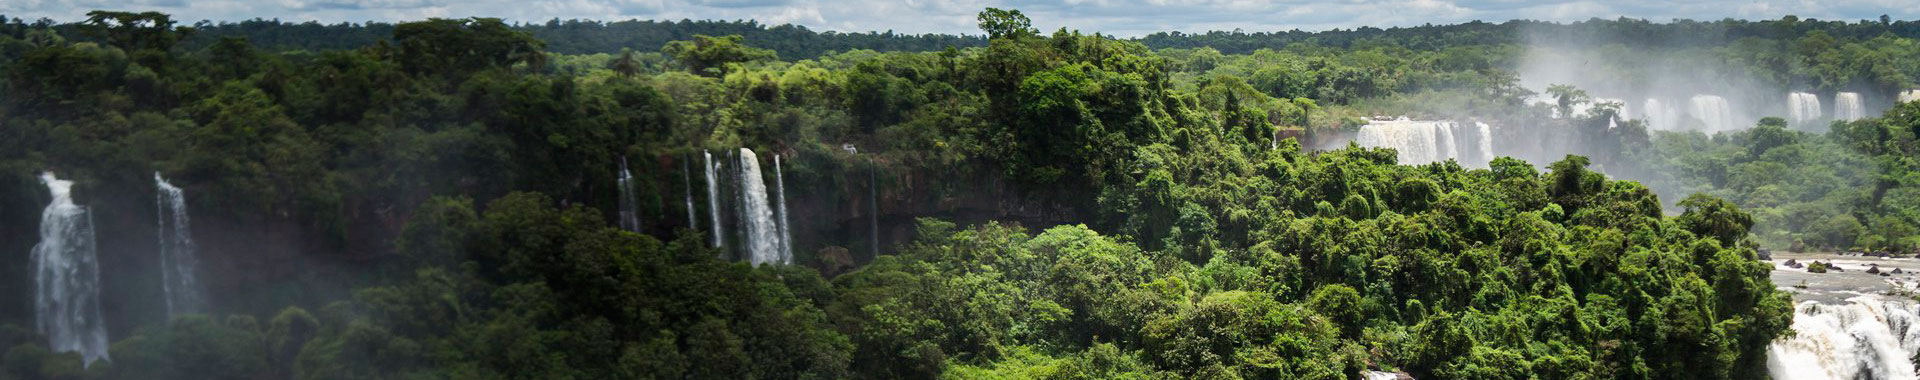 Rio - Foz Do Iguazú - Manaos - Salvador